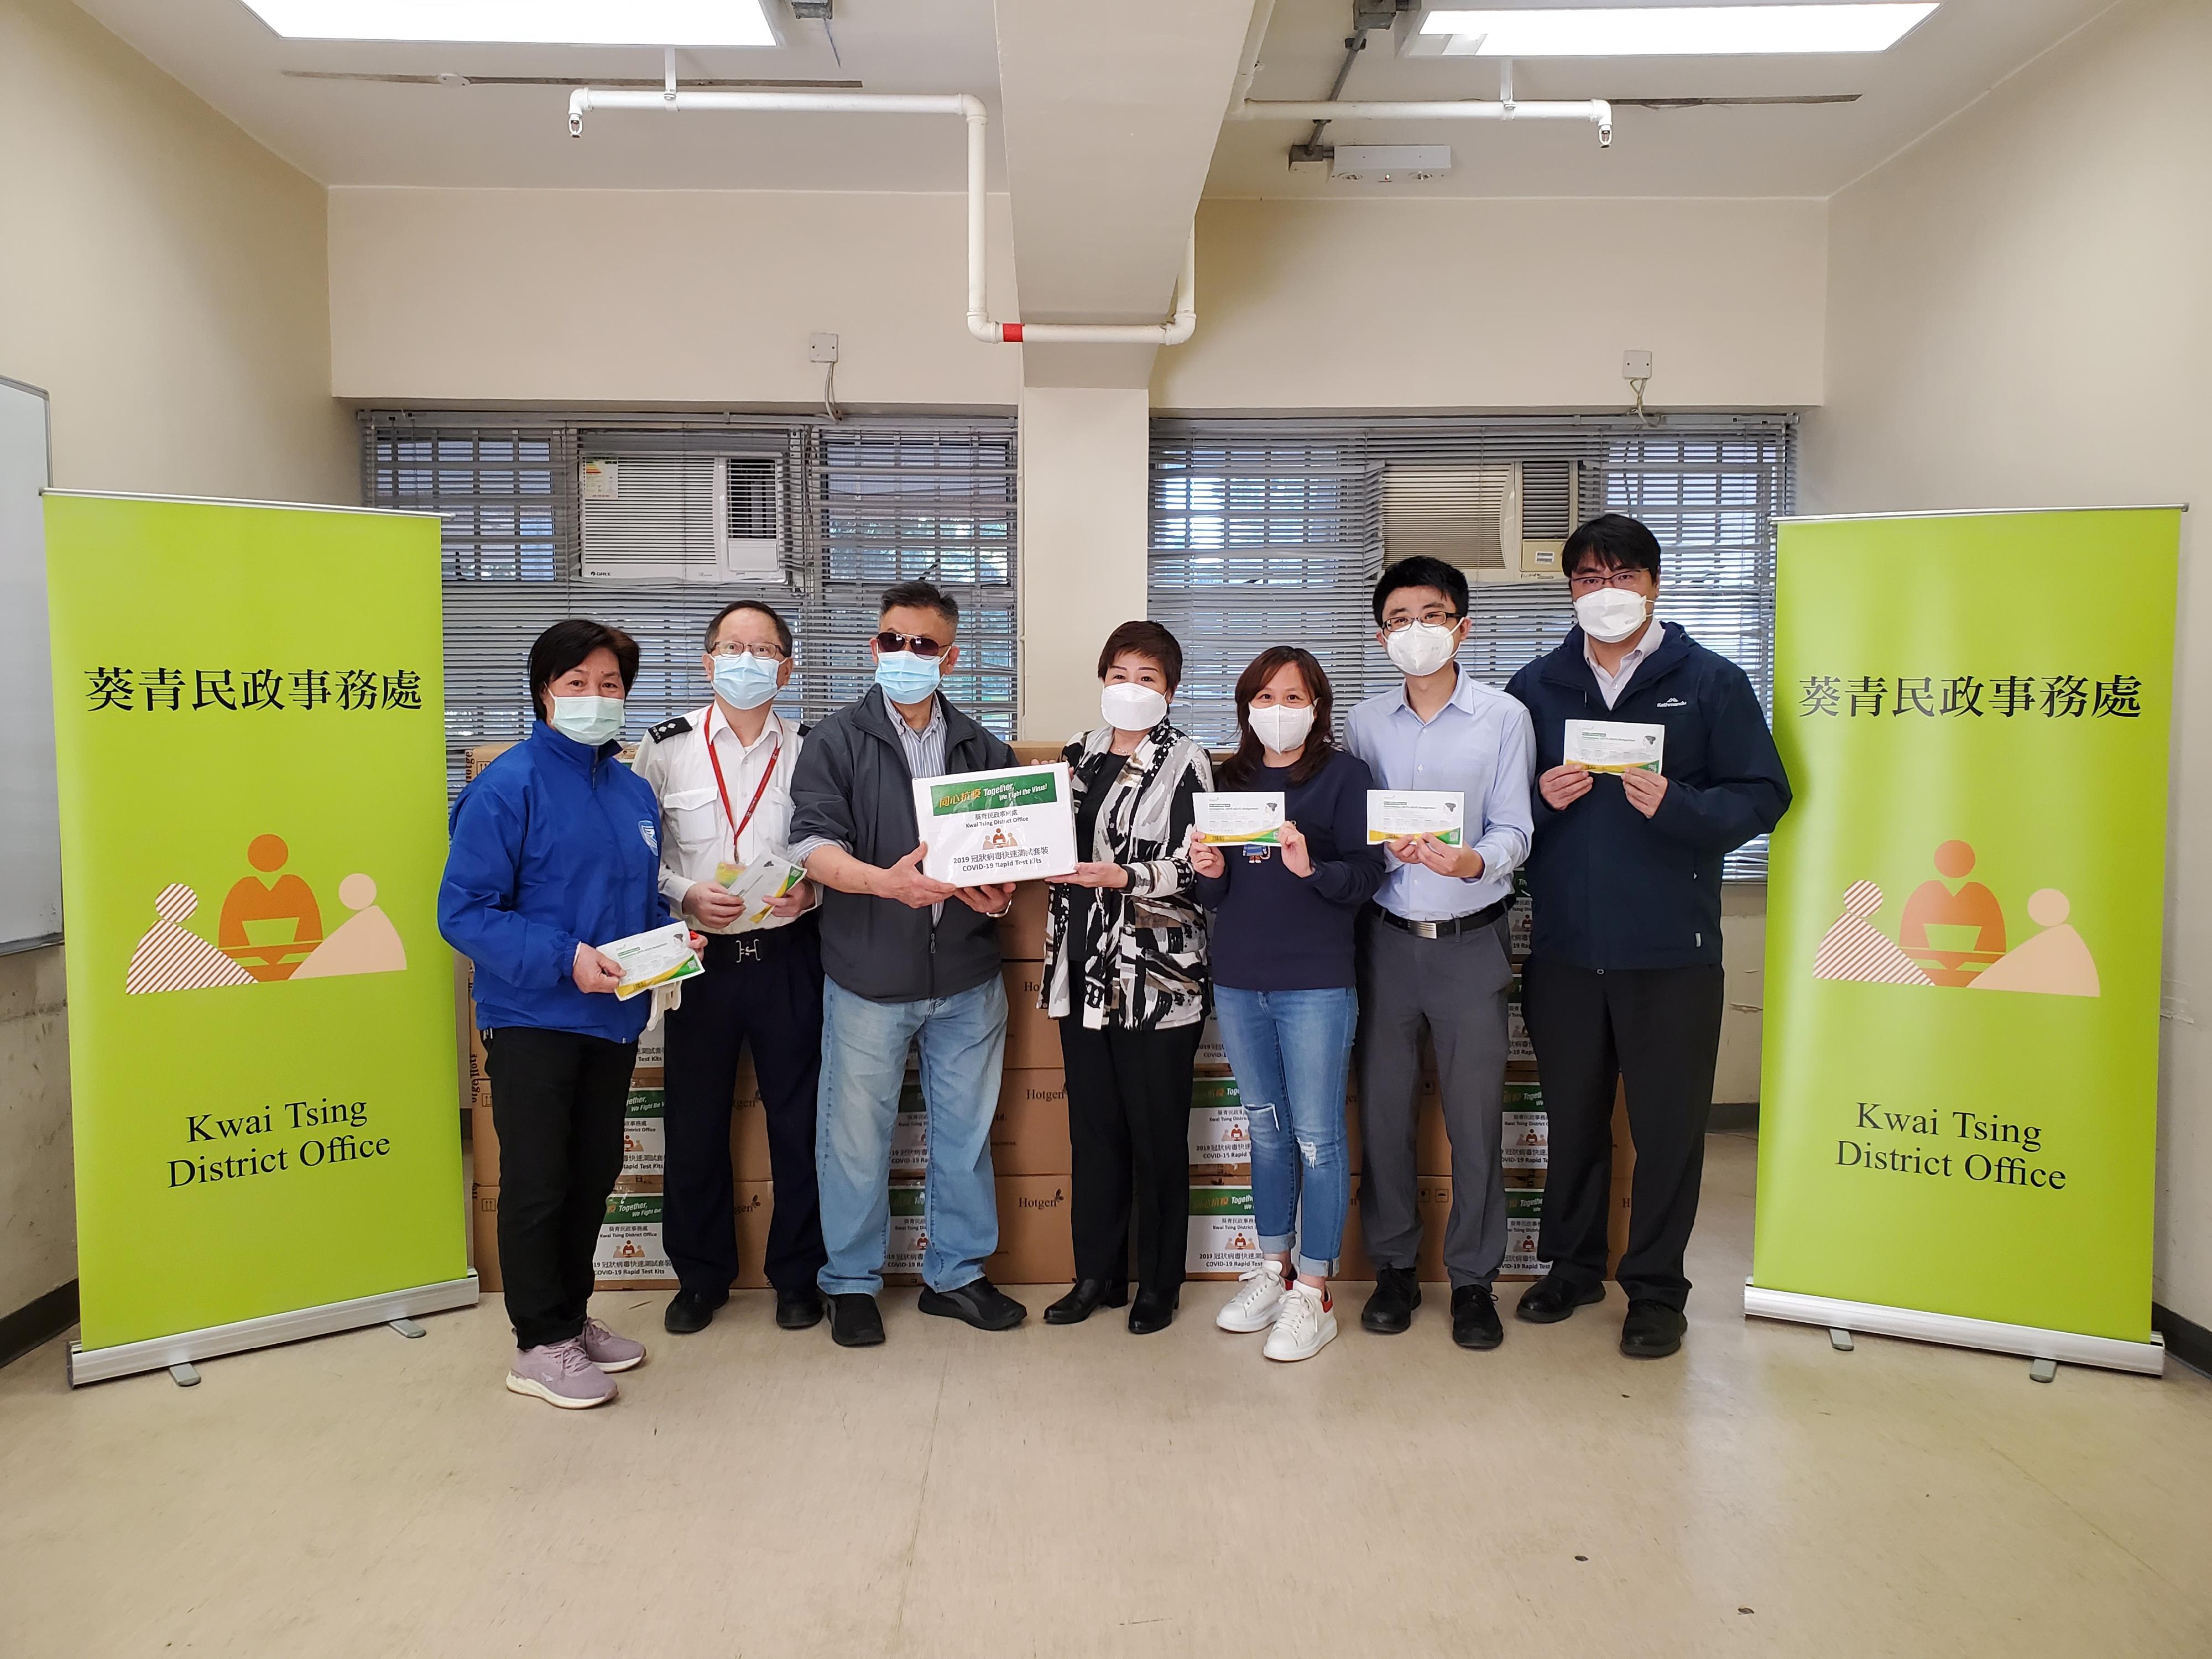 葵青民政事务处向青雅苑的物业管理公司派发2019冠状病毒病快速测试套装，供其住户、清洁及物管员工作自愿检测。